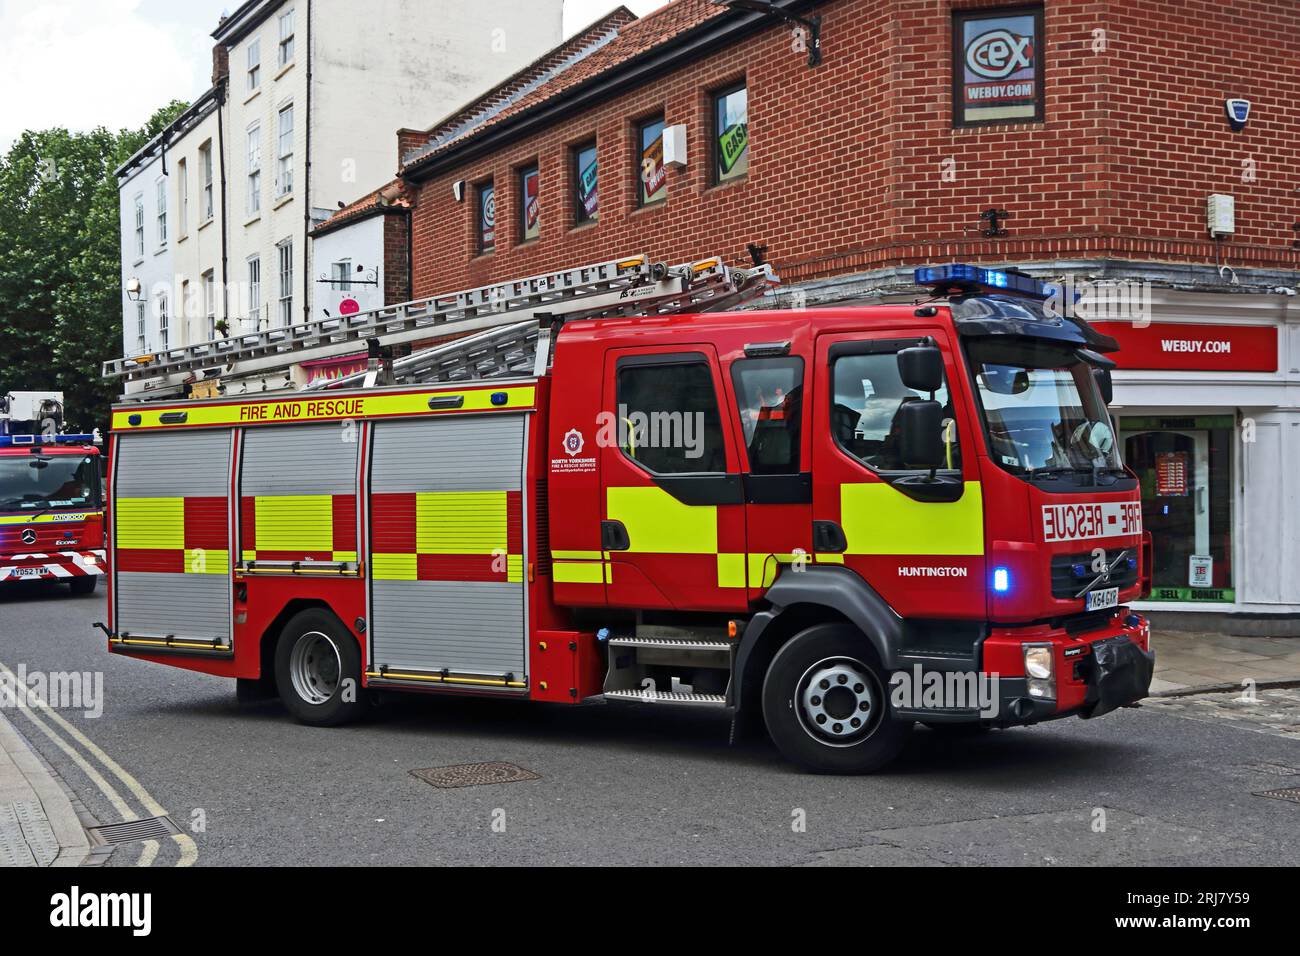 Huntington Station Fire Engine assiste à un appel d'urgence à York Banque D'Images